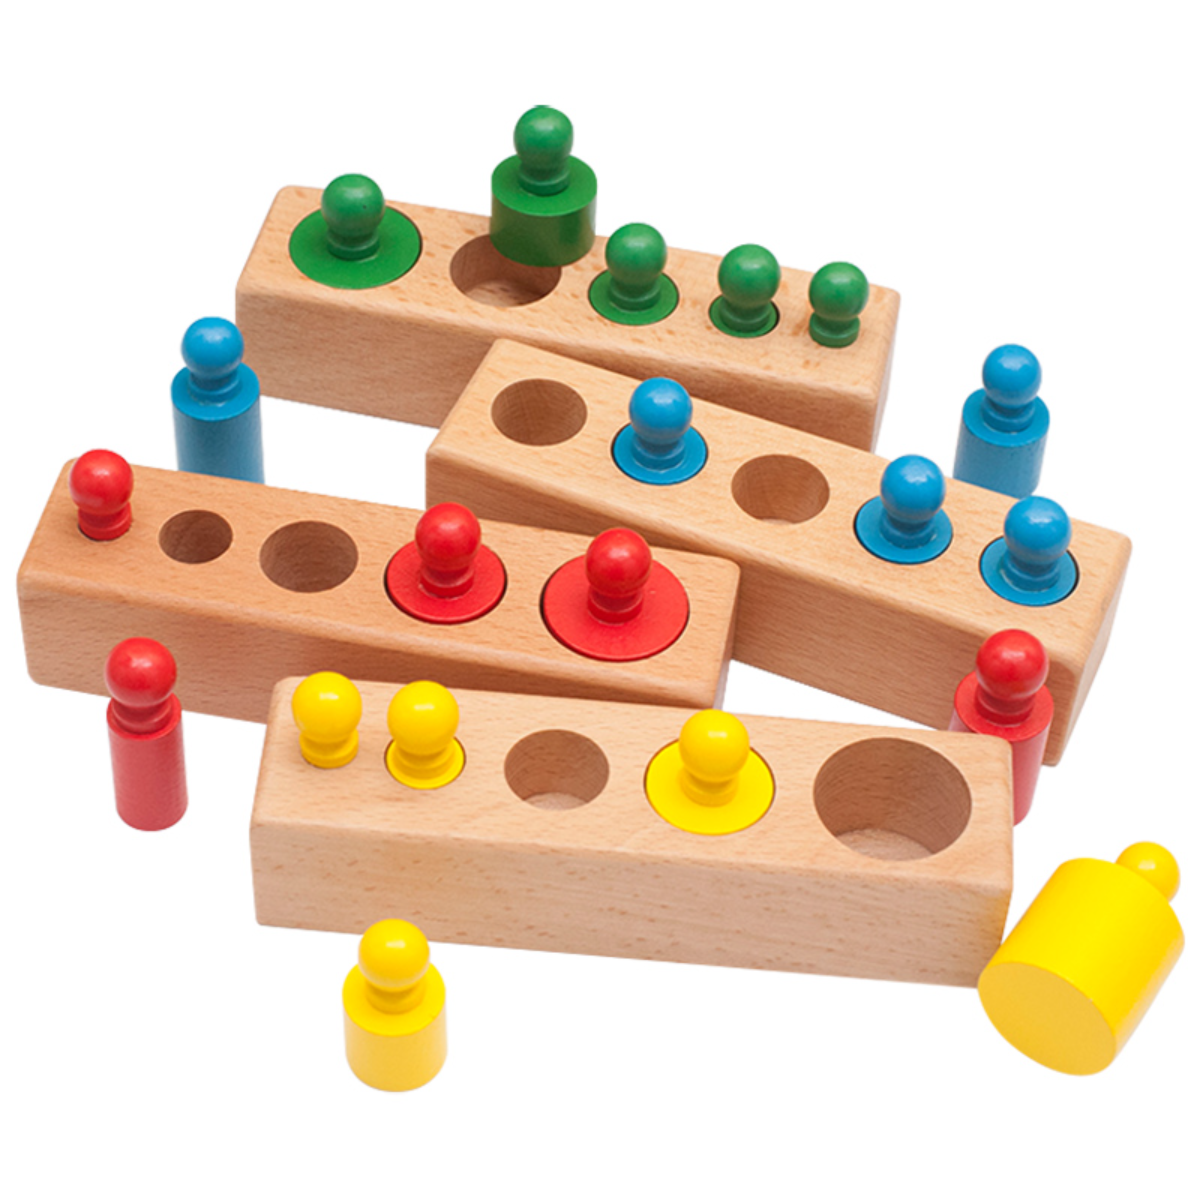 『知育おもちゃ』木製モンテッソーリ知育おもちゃ｜遊んでいるうちに、大きさの違いや色の認識、自然の感覚、配色などが理解できる